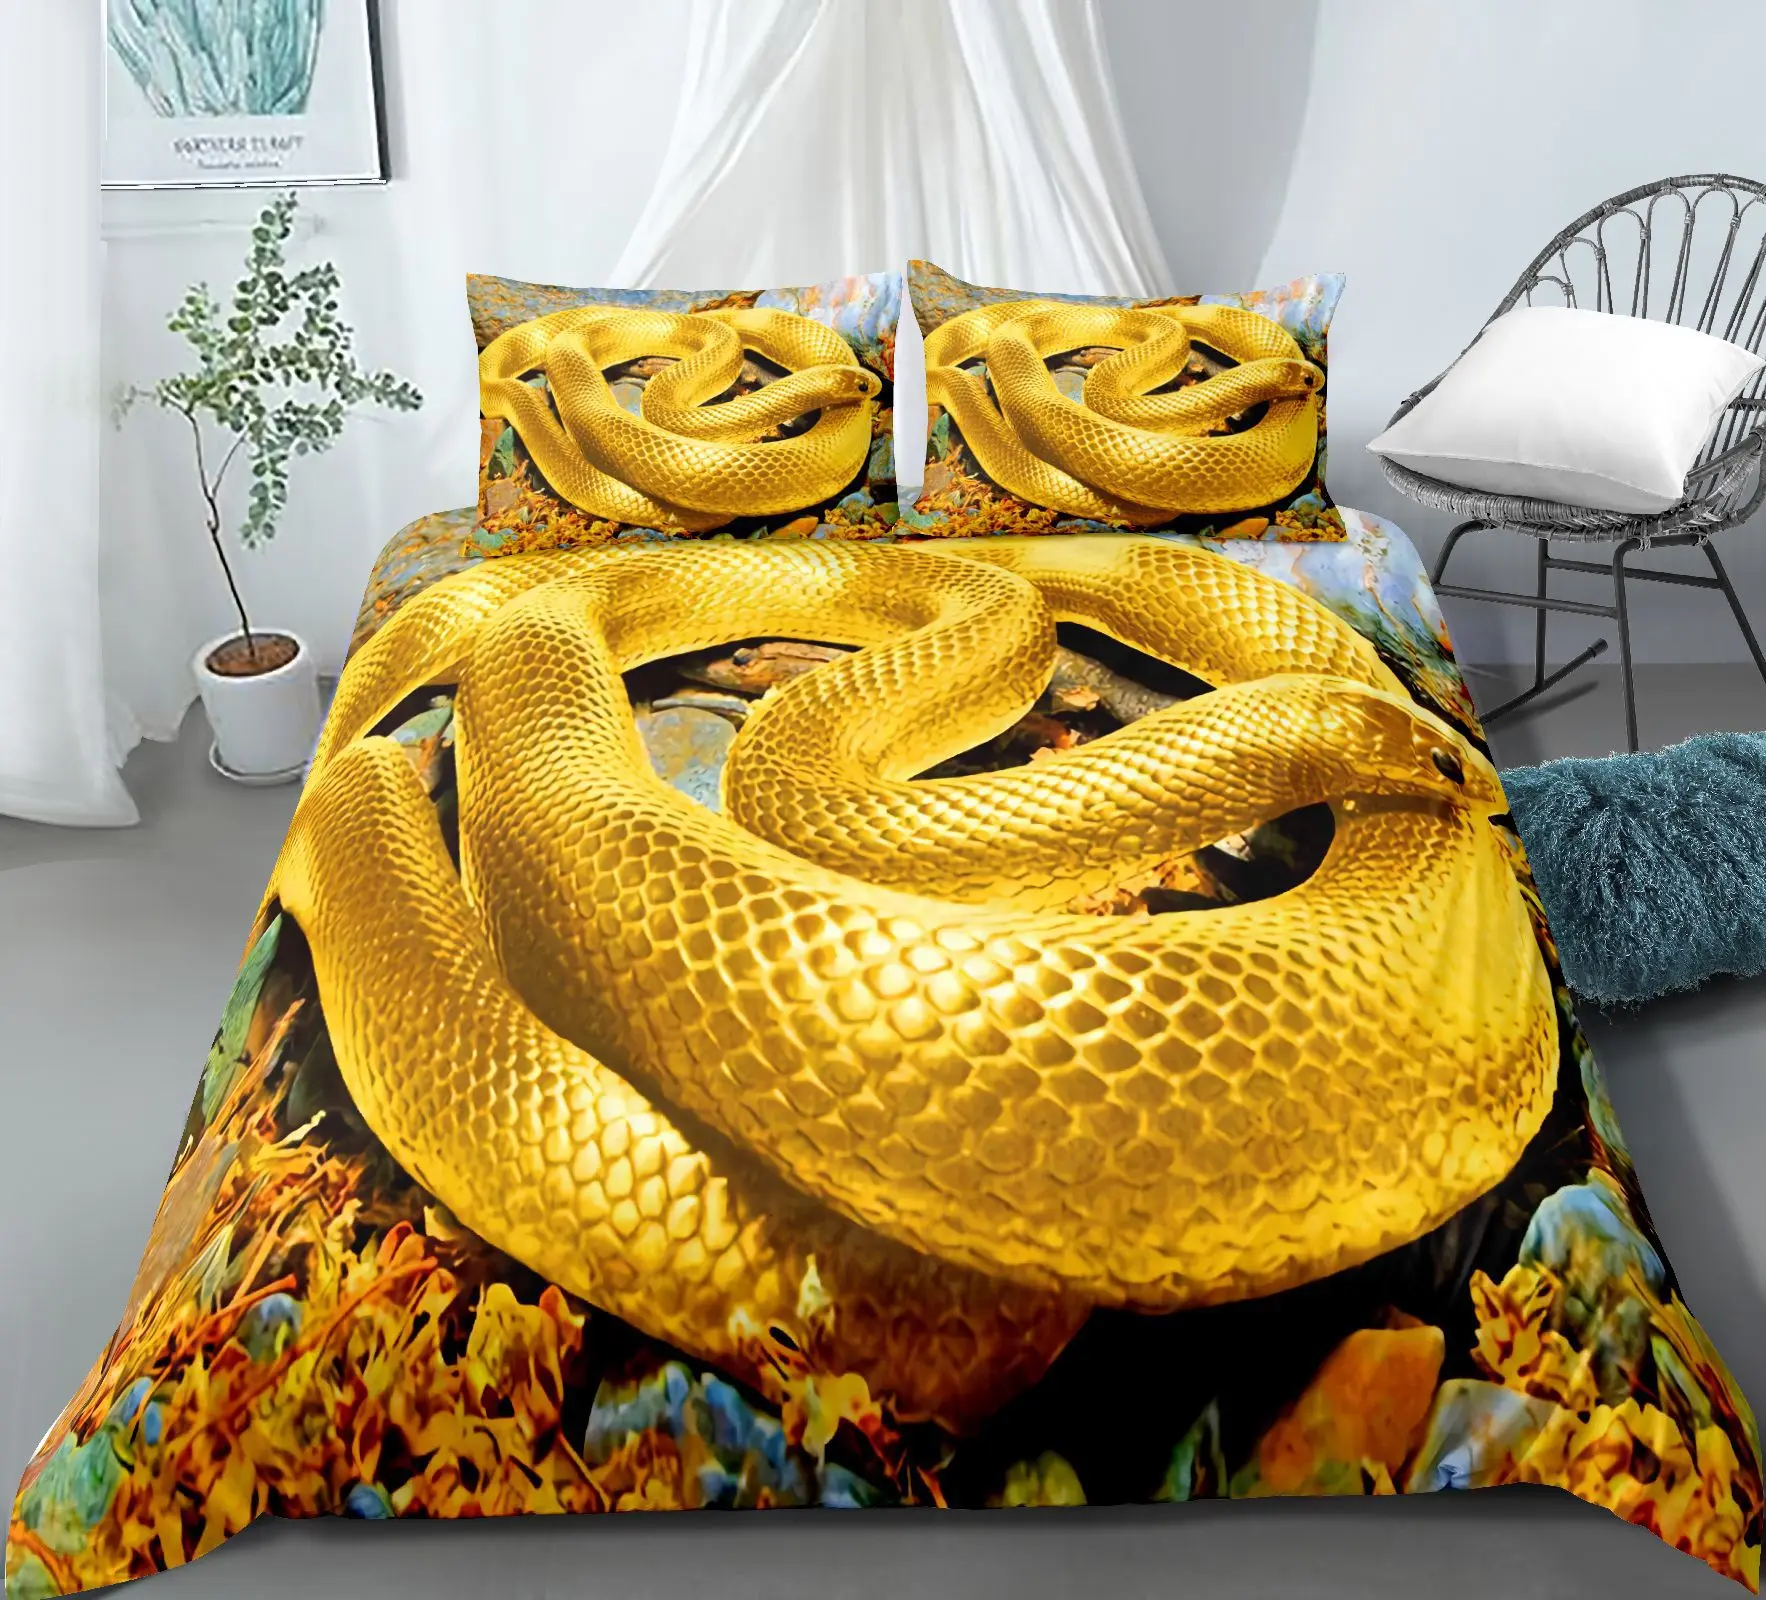 Jogo de edredom Queen Yellow Snake com estampa 3D de cobra amarela  conjuntos de 3 peças com zíper, capa de edredom Queen tamanho 228,6 x 228,6  cm e 2 fronhas 50,8 x 66 cm